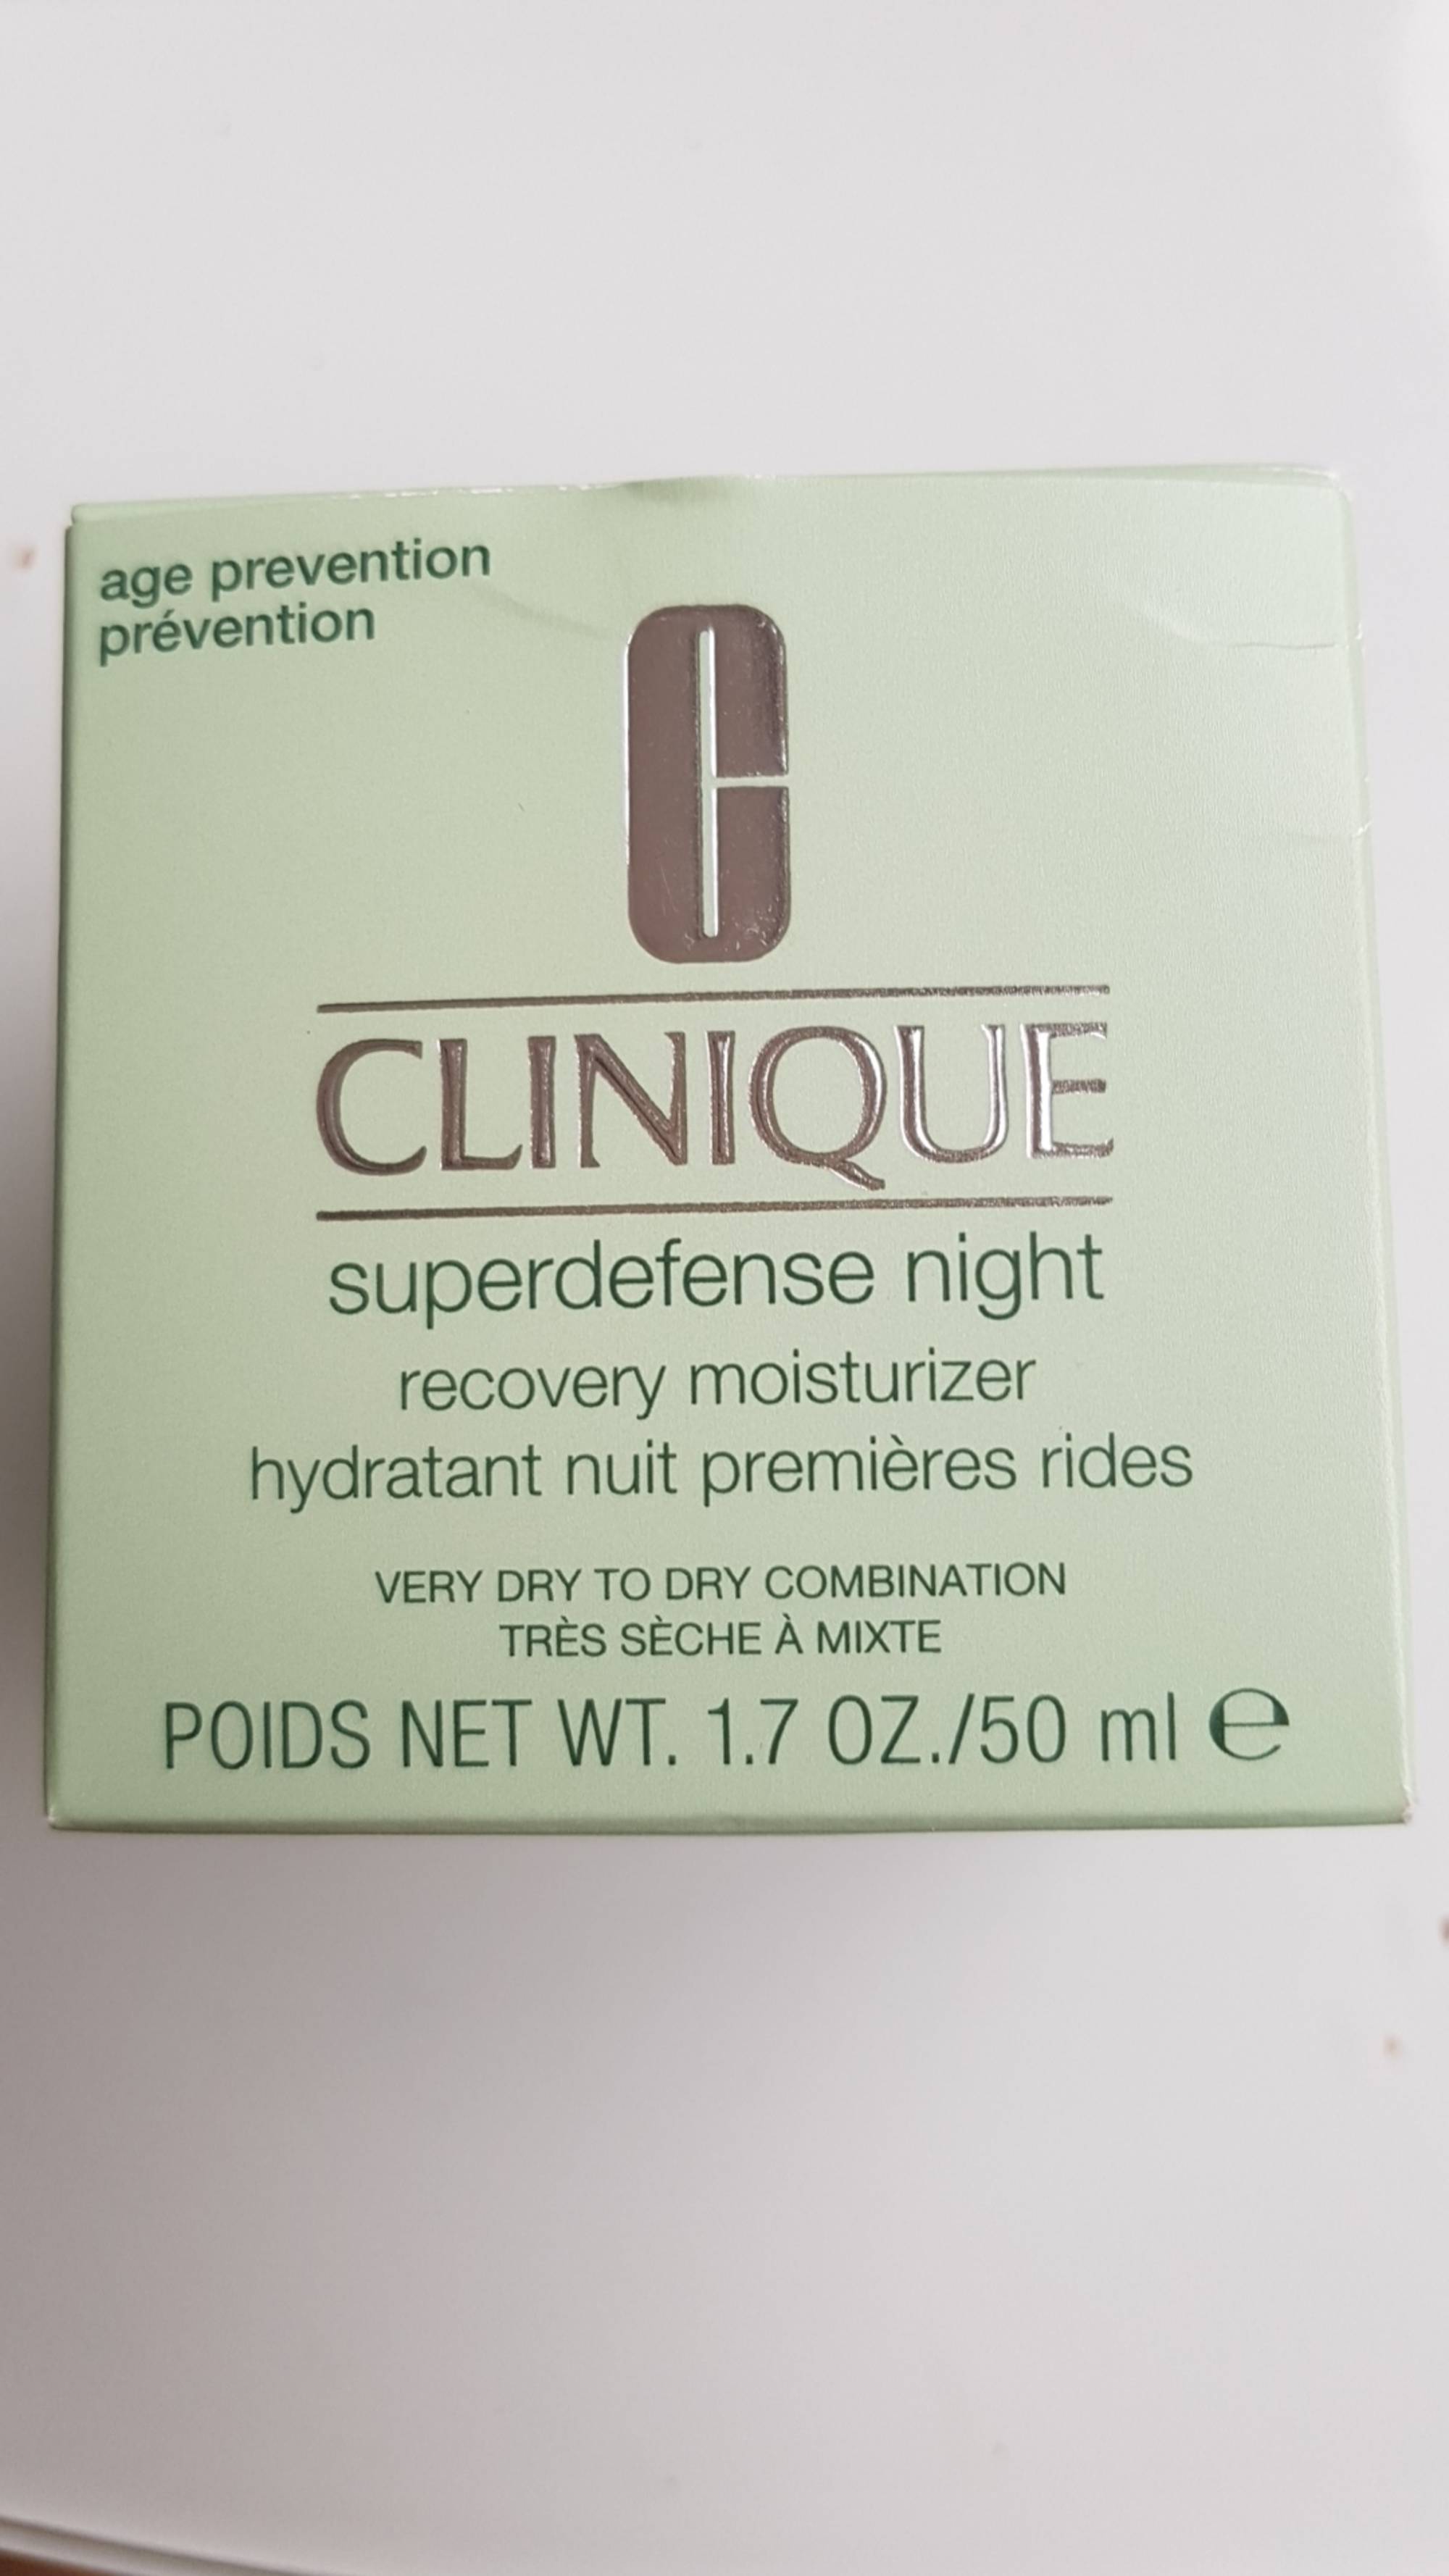 CLINIQUE - Hydratant nuit premières rides